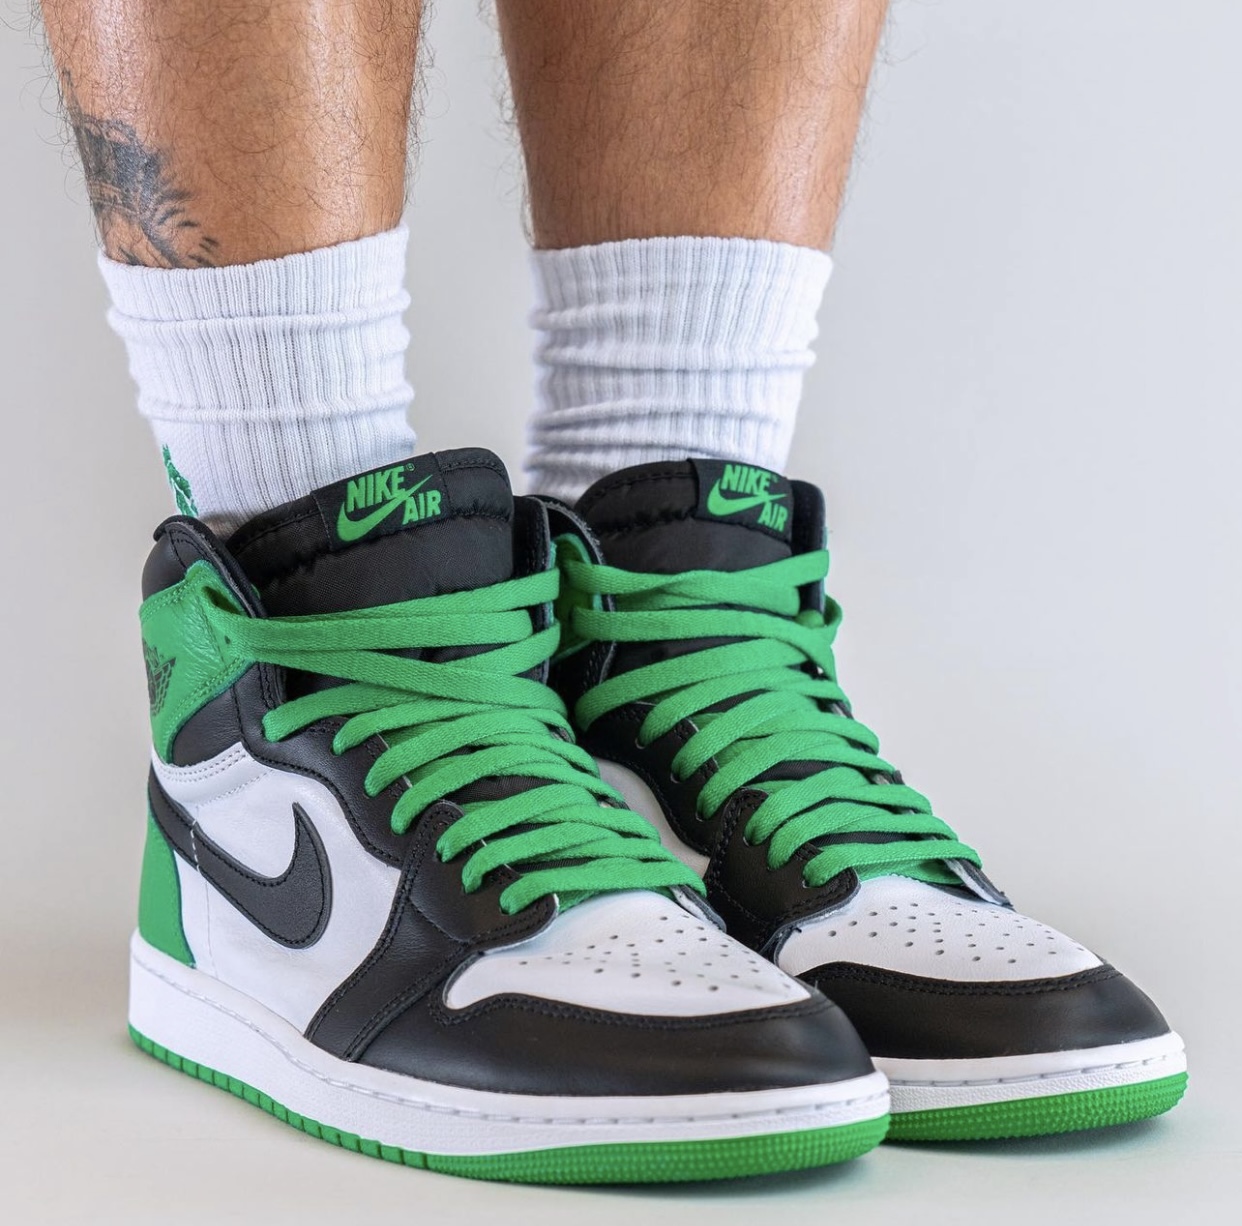 On-Feet Photos Of Air Jordan 1 High OG “Lucky Green” – Clout News